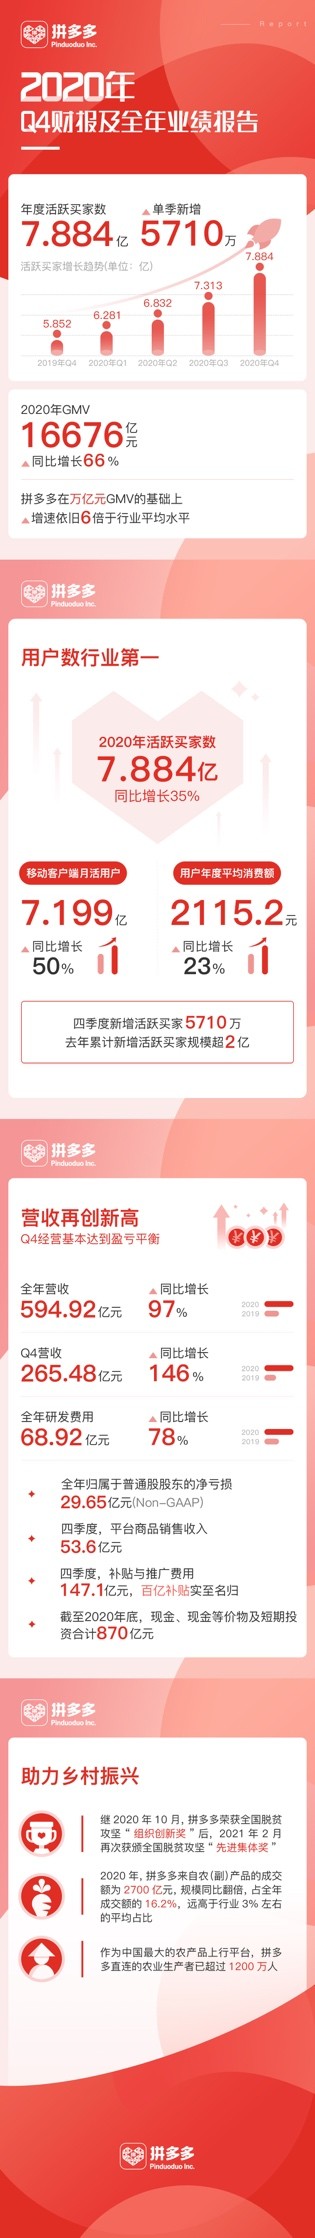 拼多多用户数7.88亿成为中国电商第一